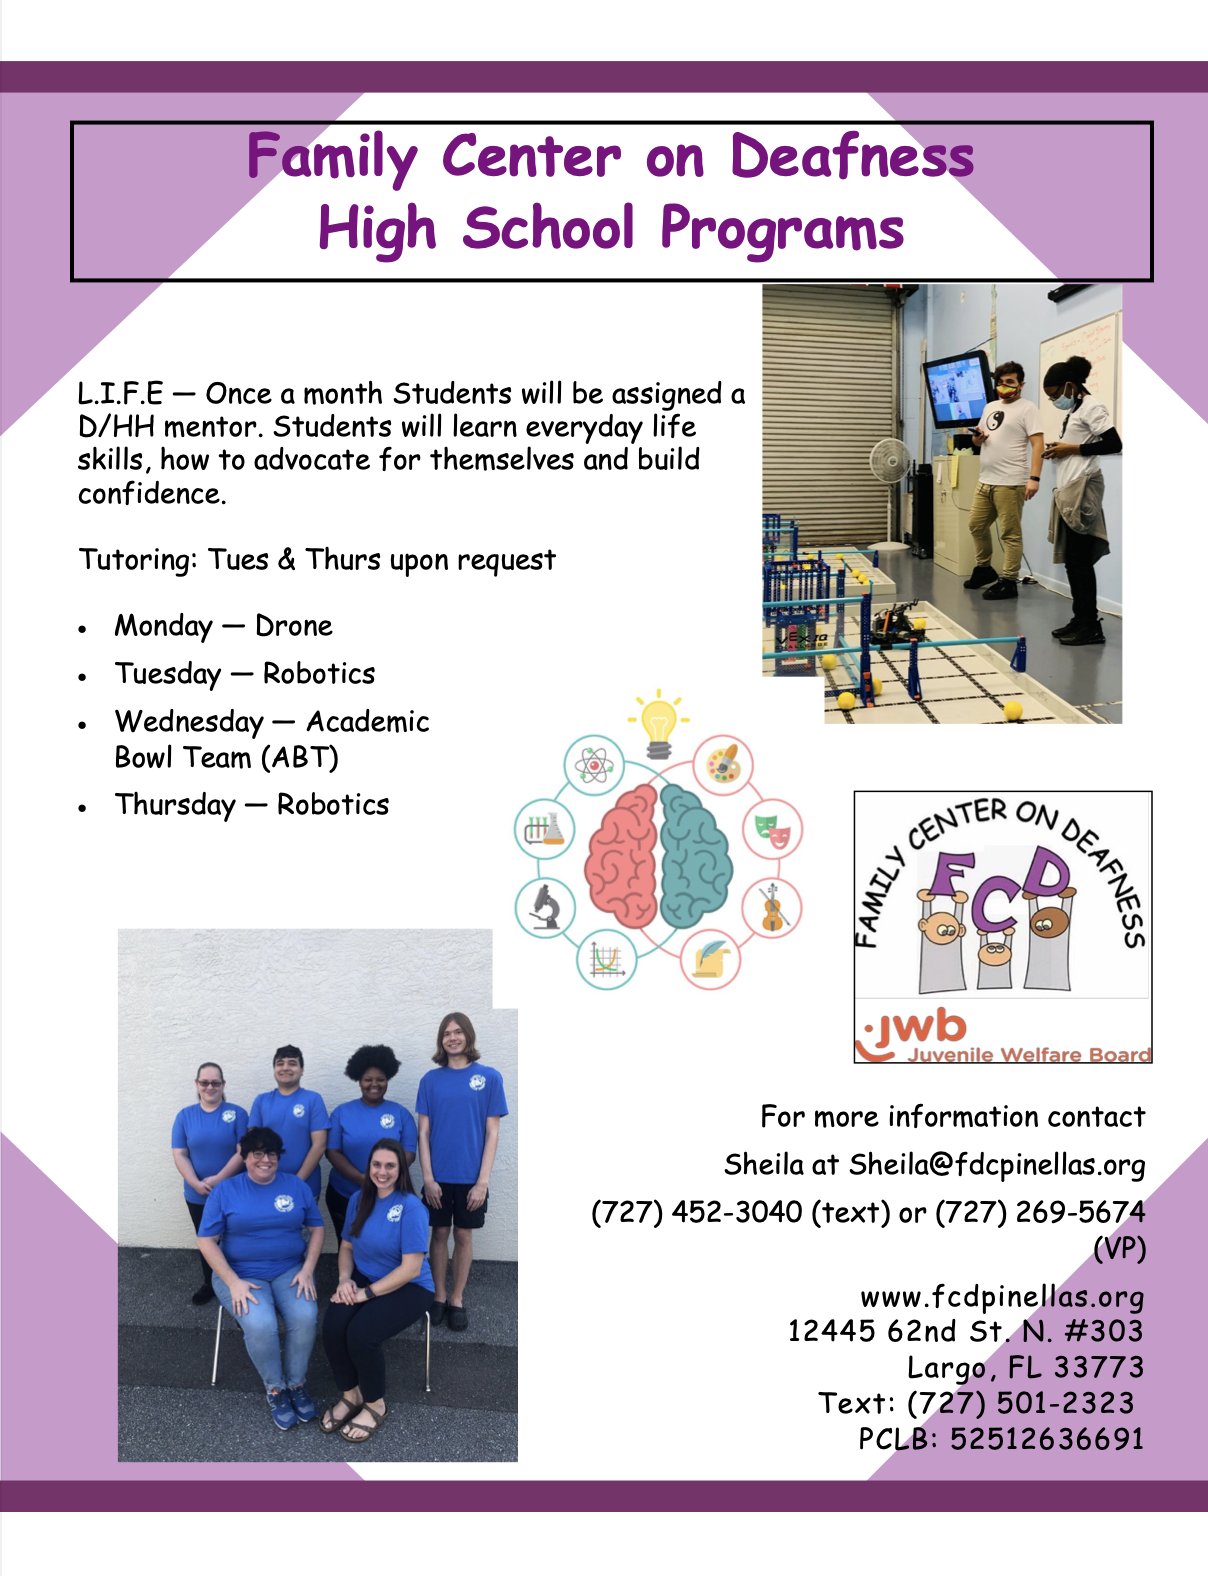 Family Center on Deafness High School programs poster.